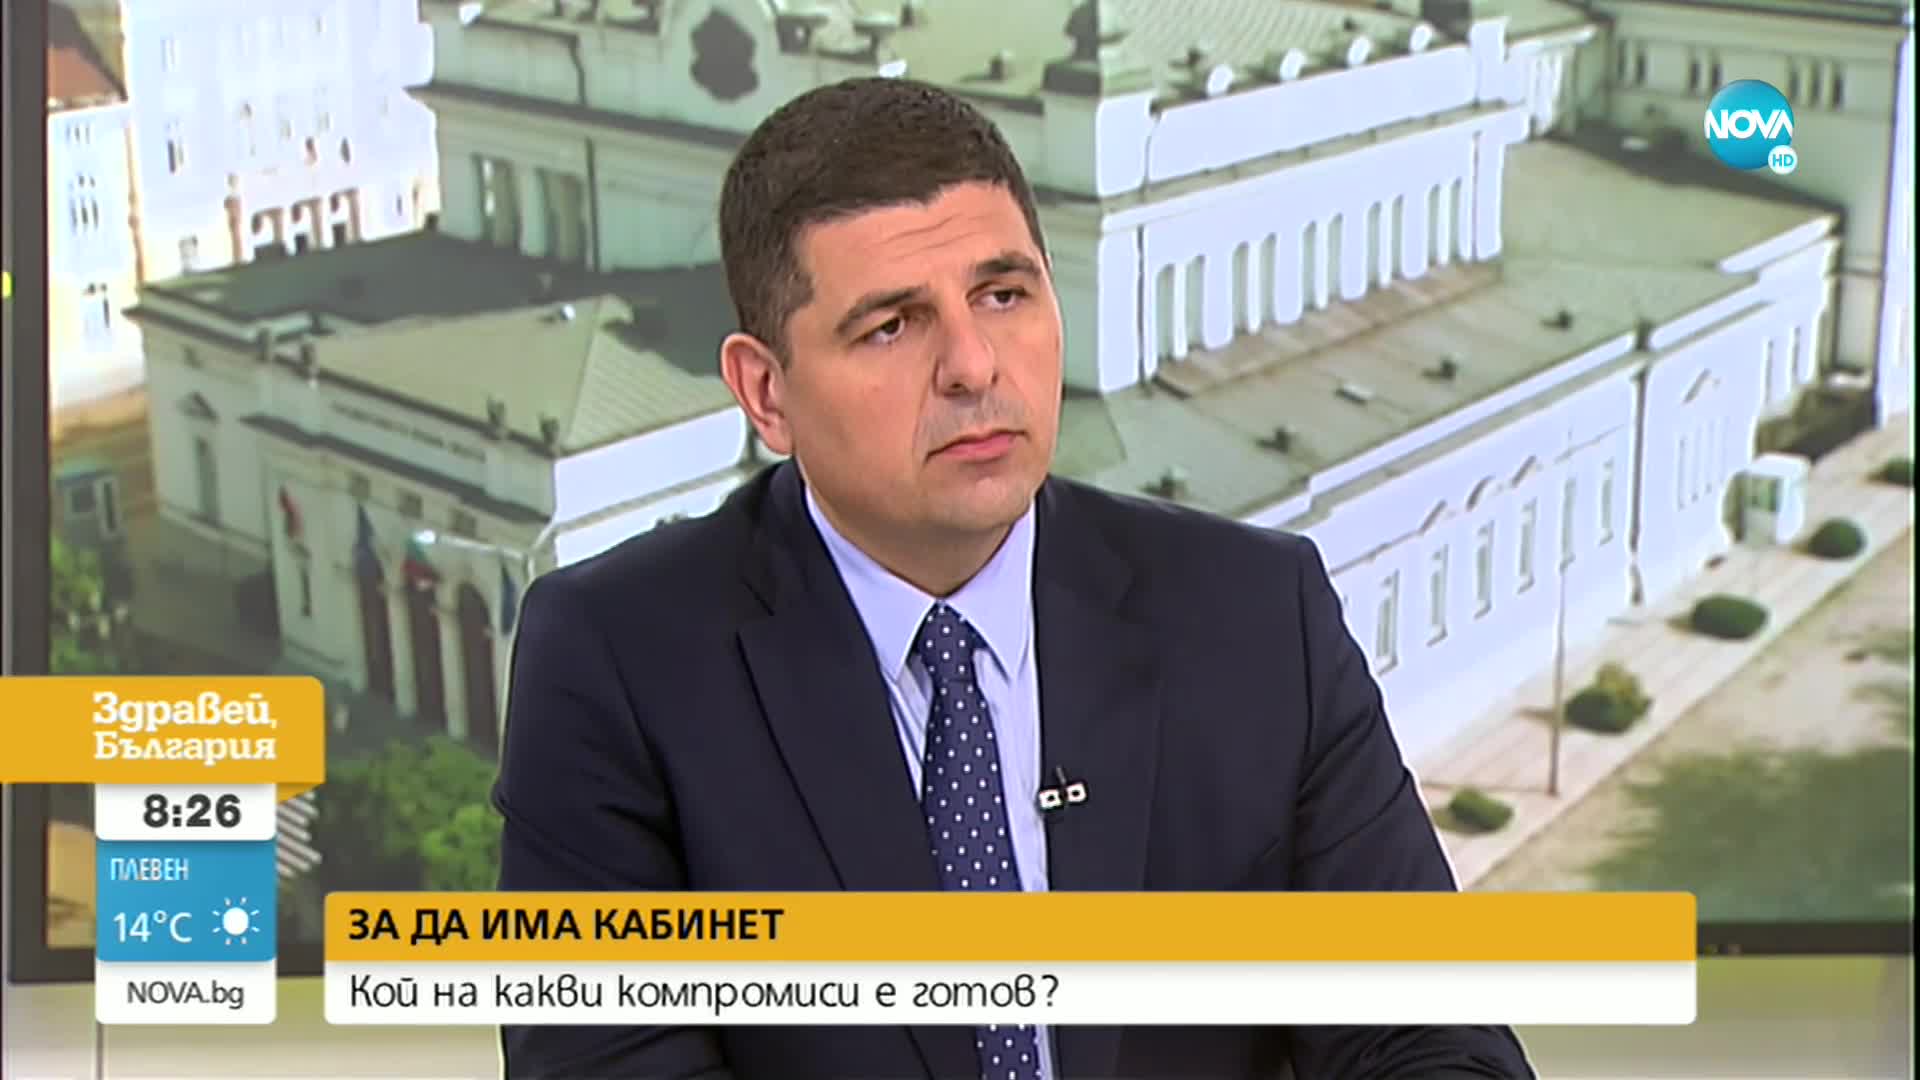 Мирчев: Ако ПП подходи разумно към втория мандат, е възможно правителство